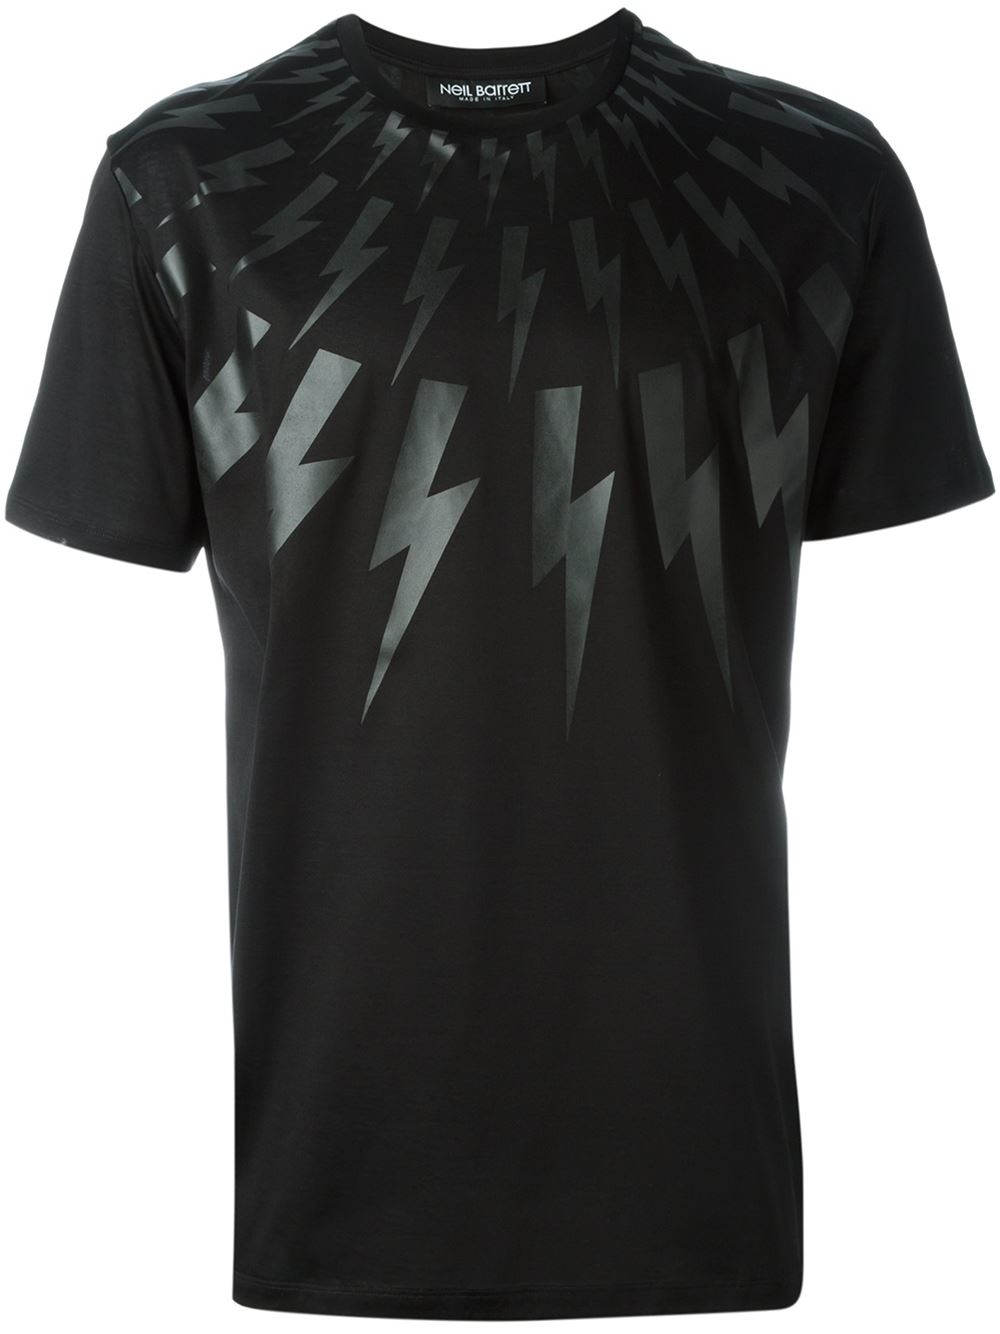 Lyst - Neil Barrett Lightning Bolt T-shirt in Black for Men